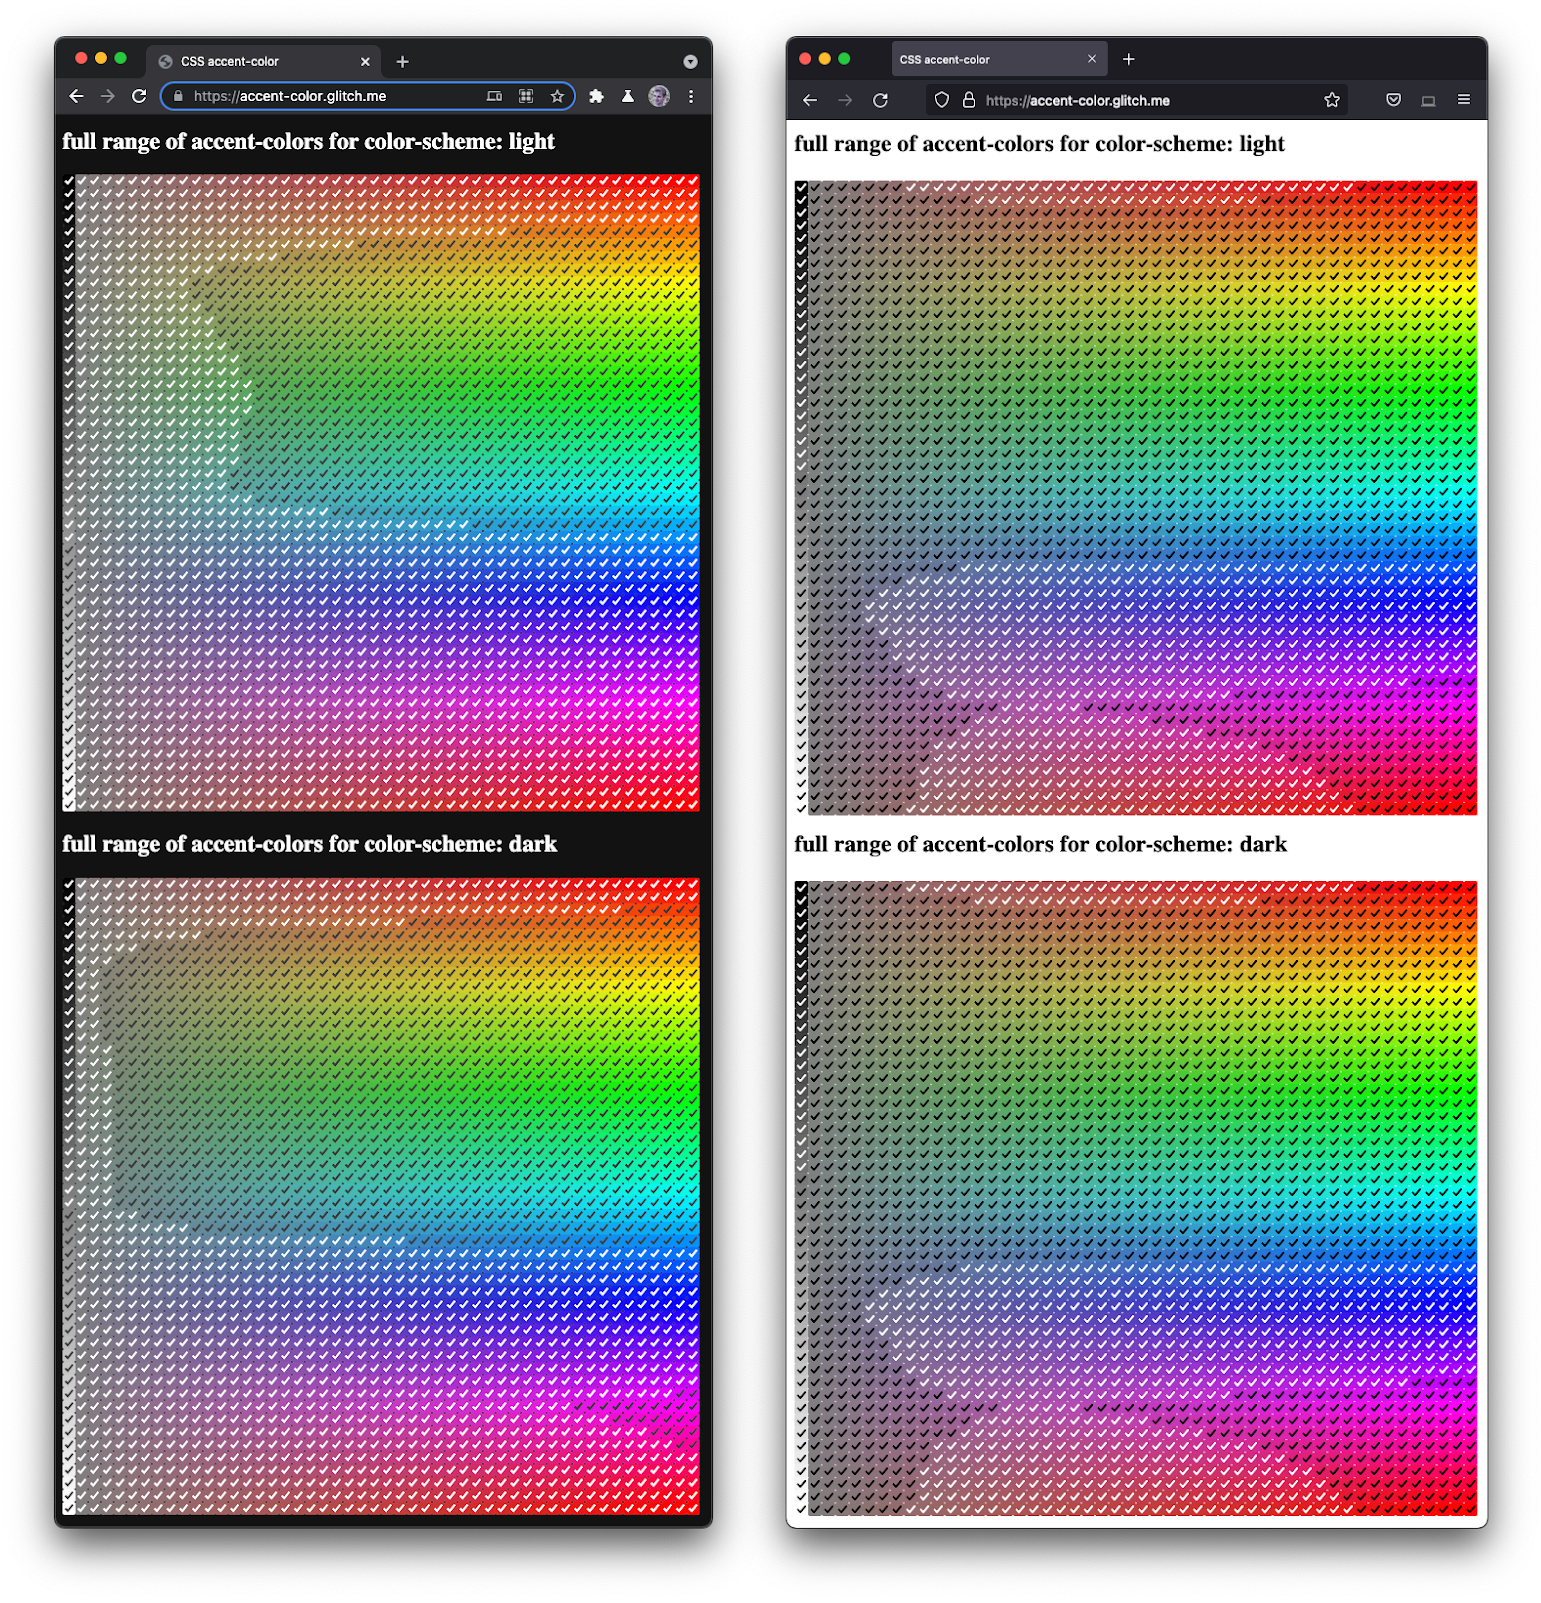 Captura de pantalla de Firefox y Chromium, una junto a la otra, mostrando un espectro completo de casillas de verificación en varios tonos y oscuridad.